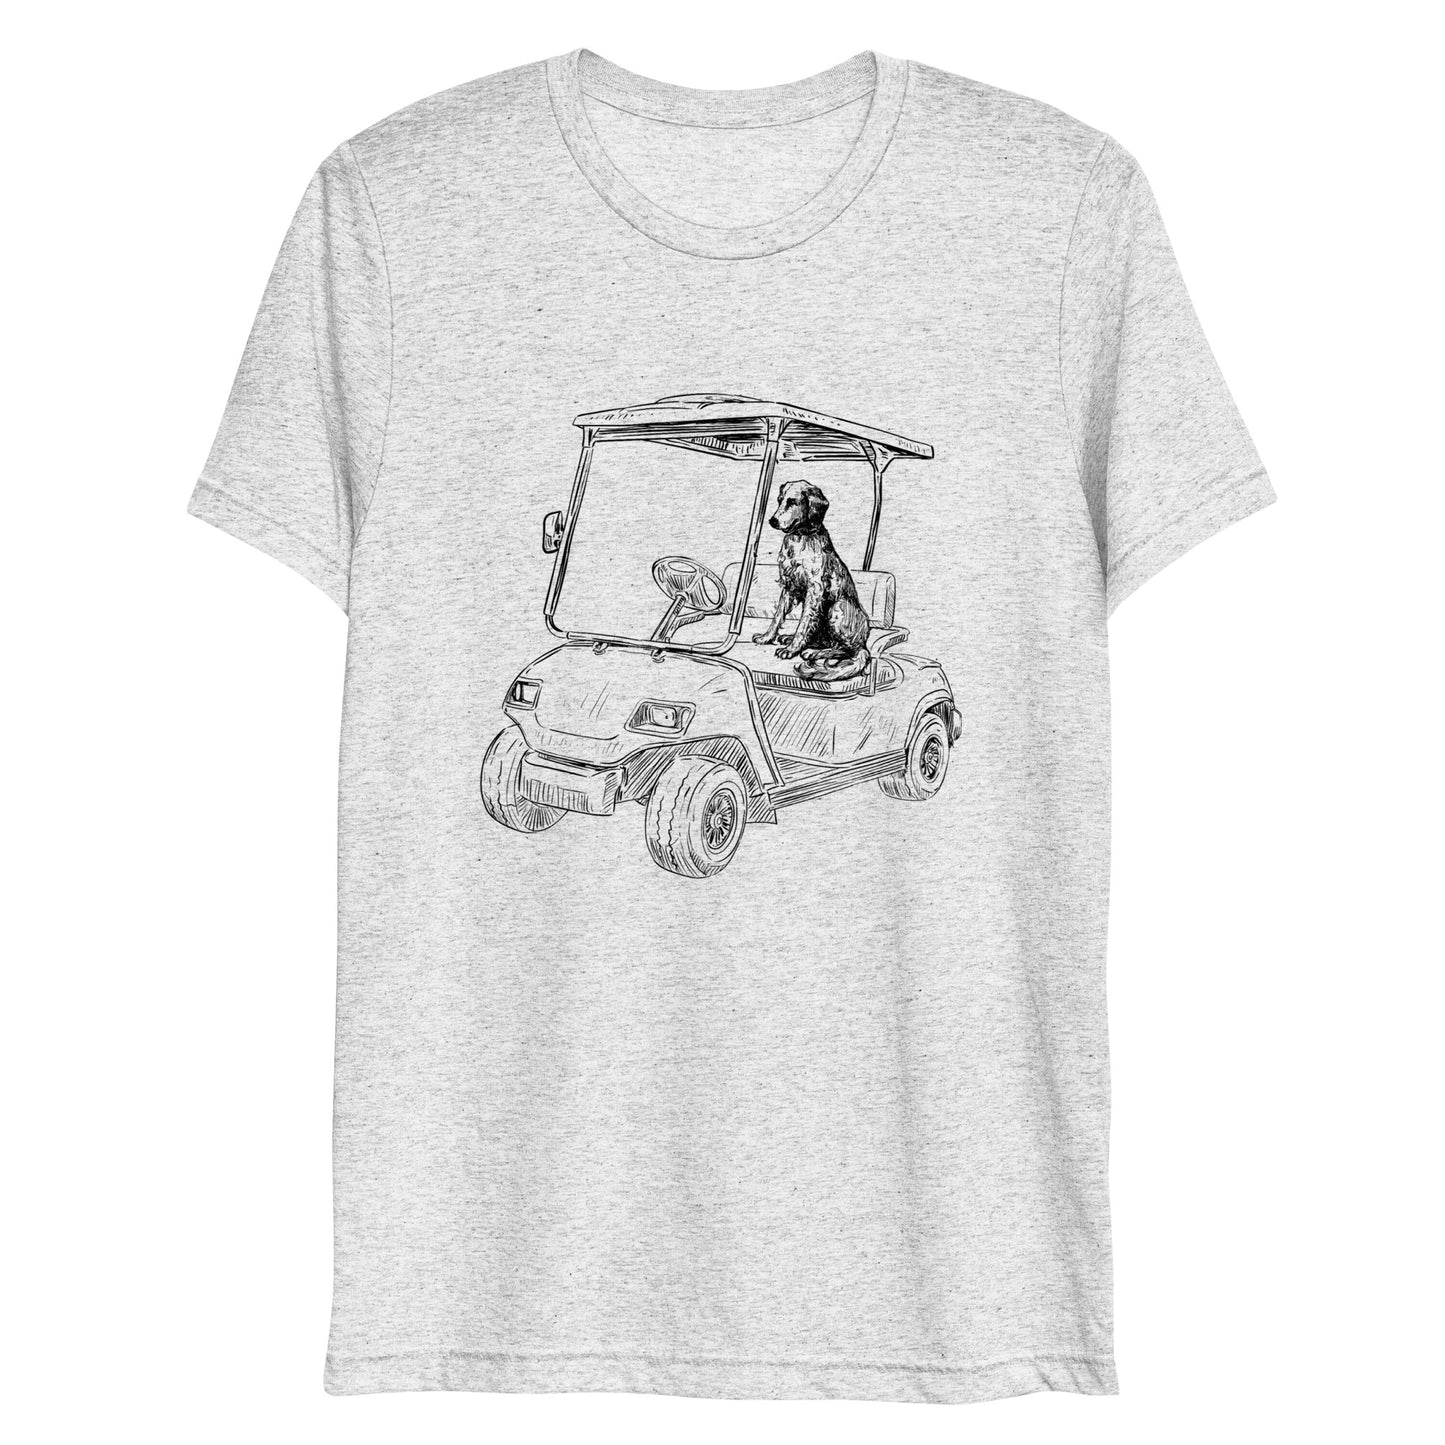 Cart Life Short sleeve t-shirt